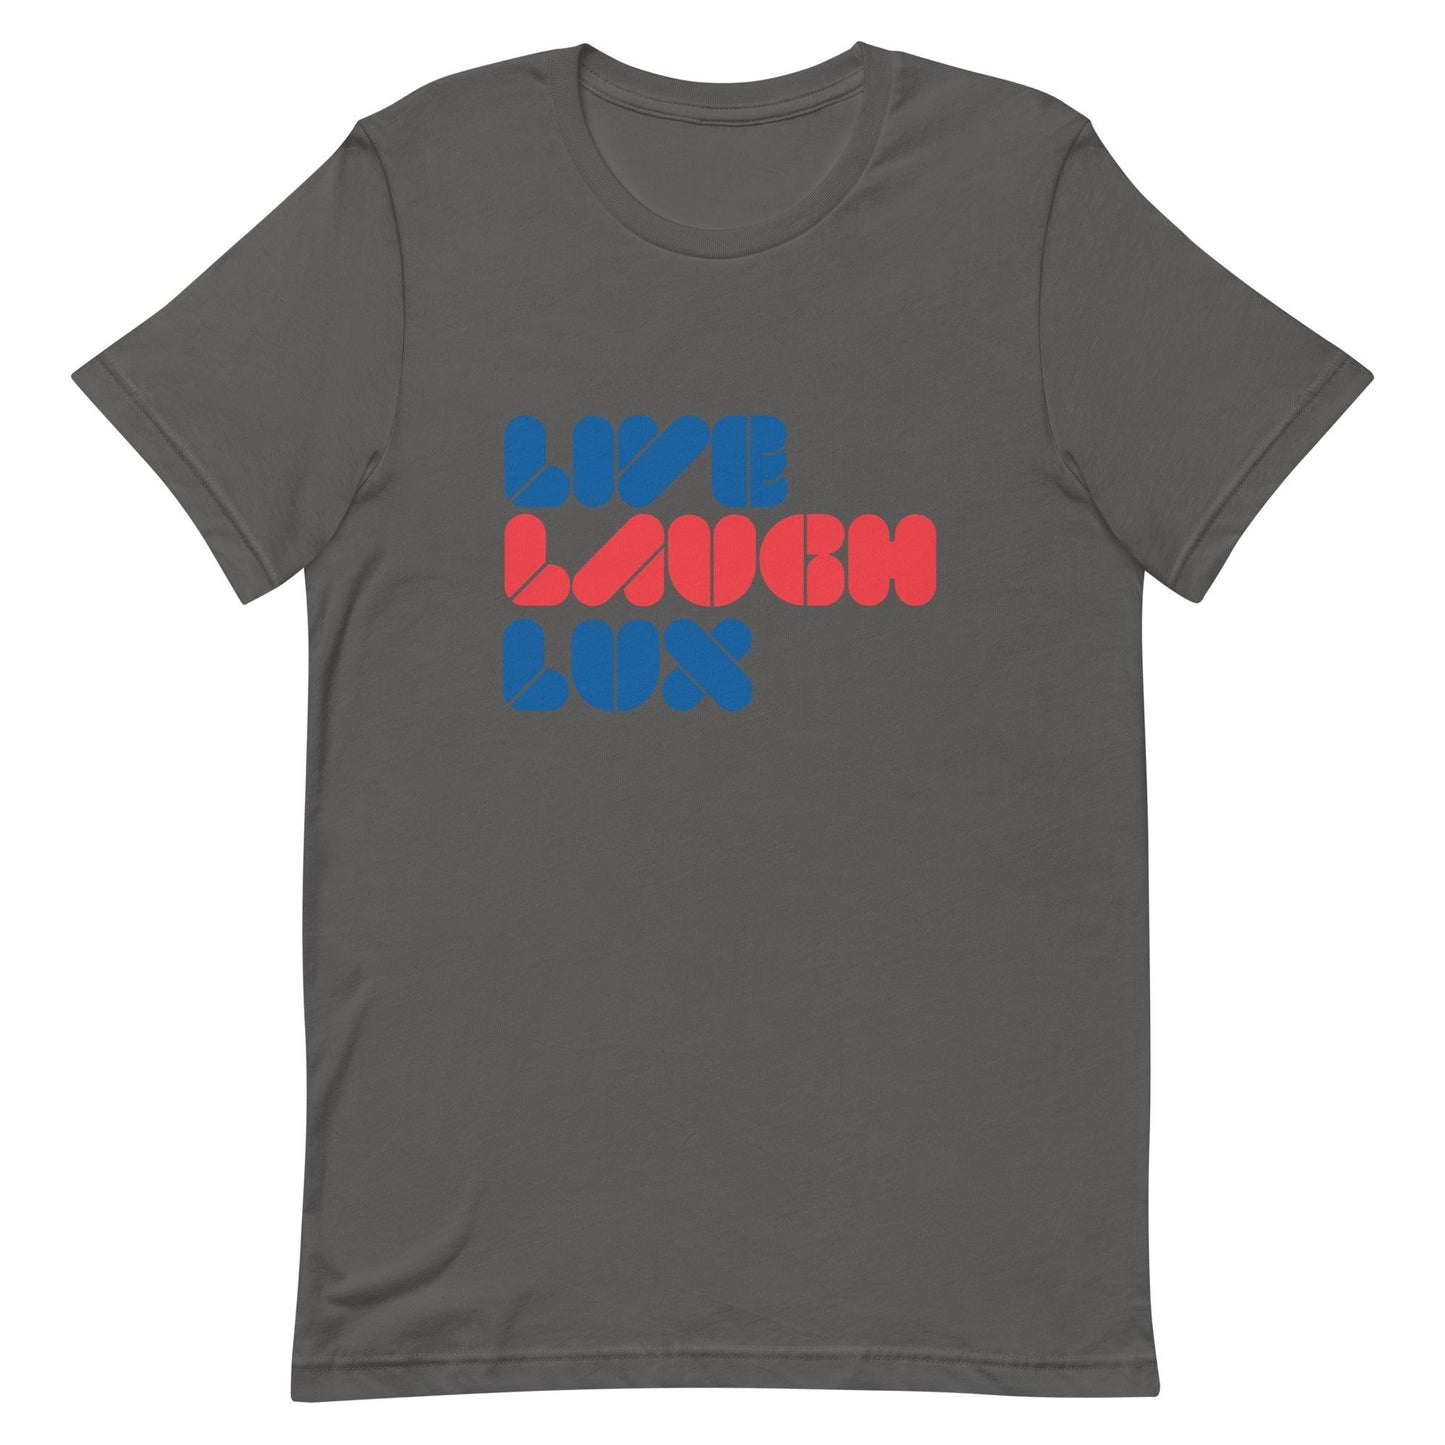 Gavin Lux “Heritage” t-shirt - Fan Arch